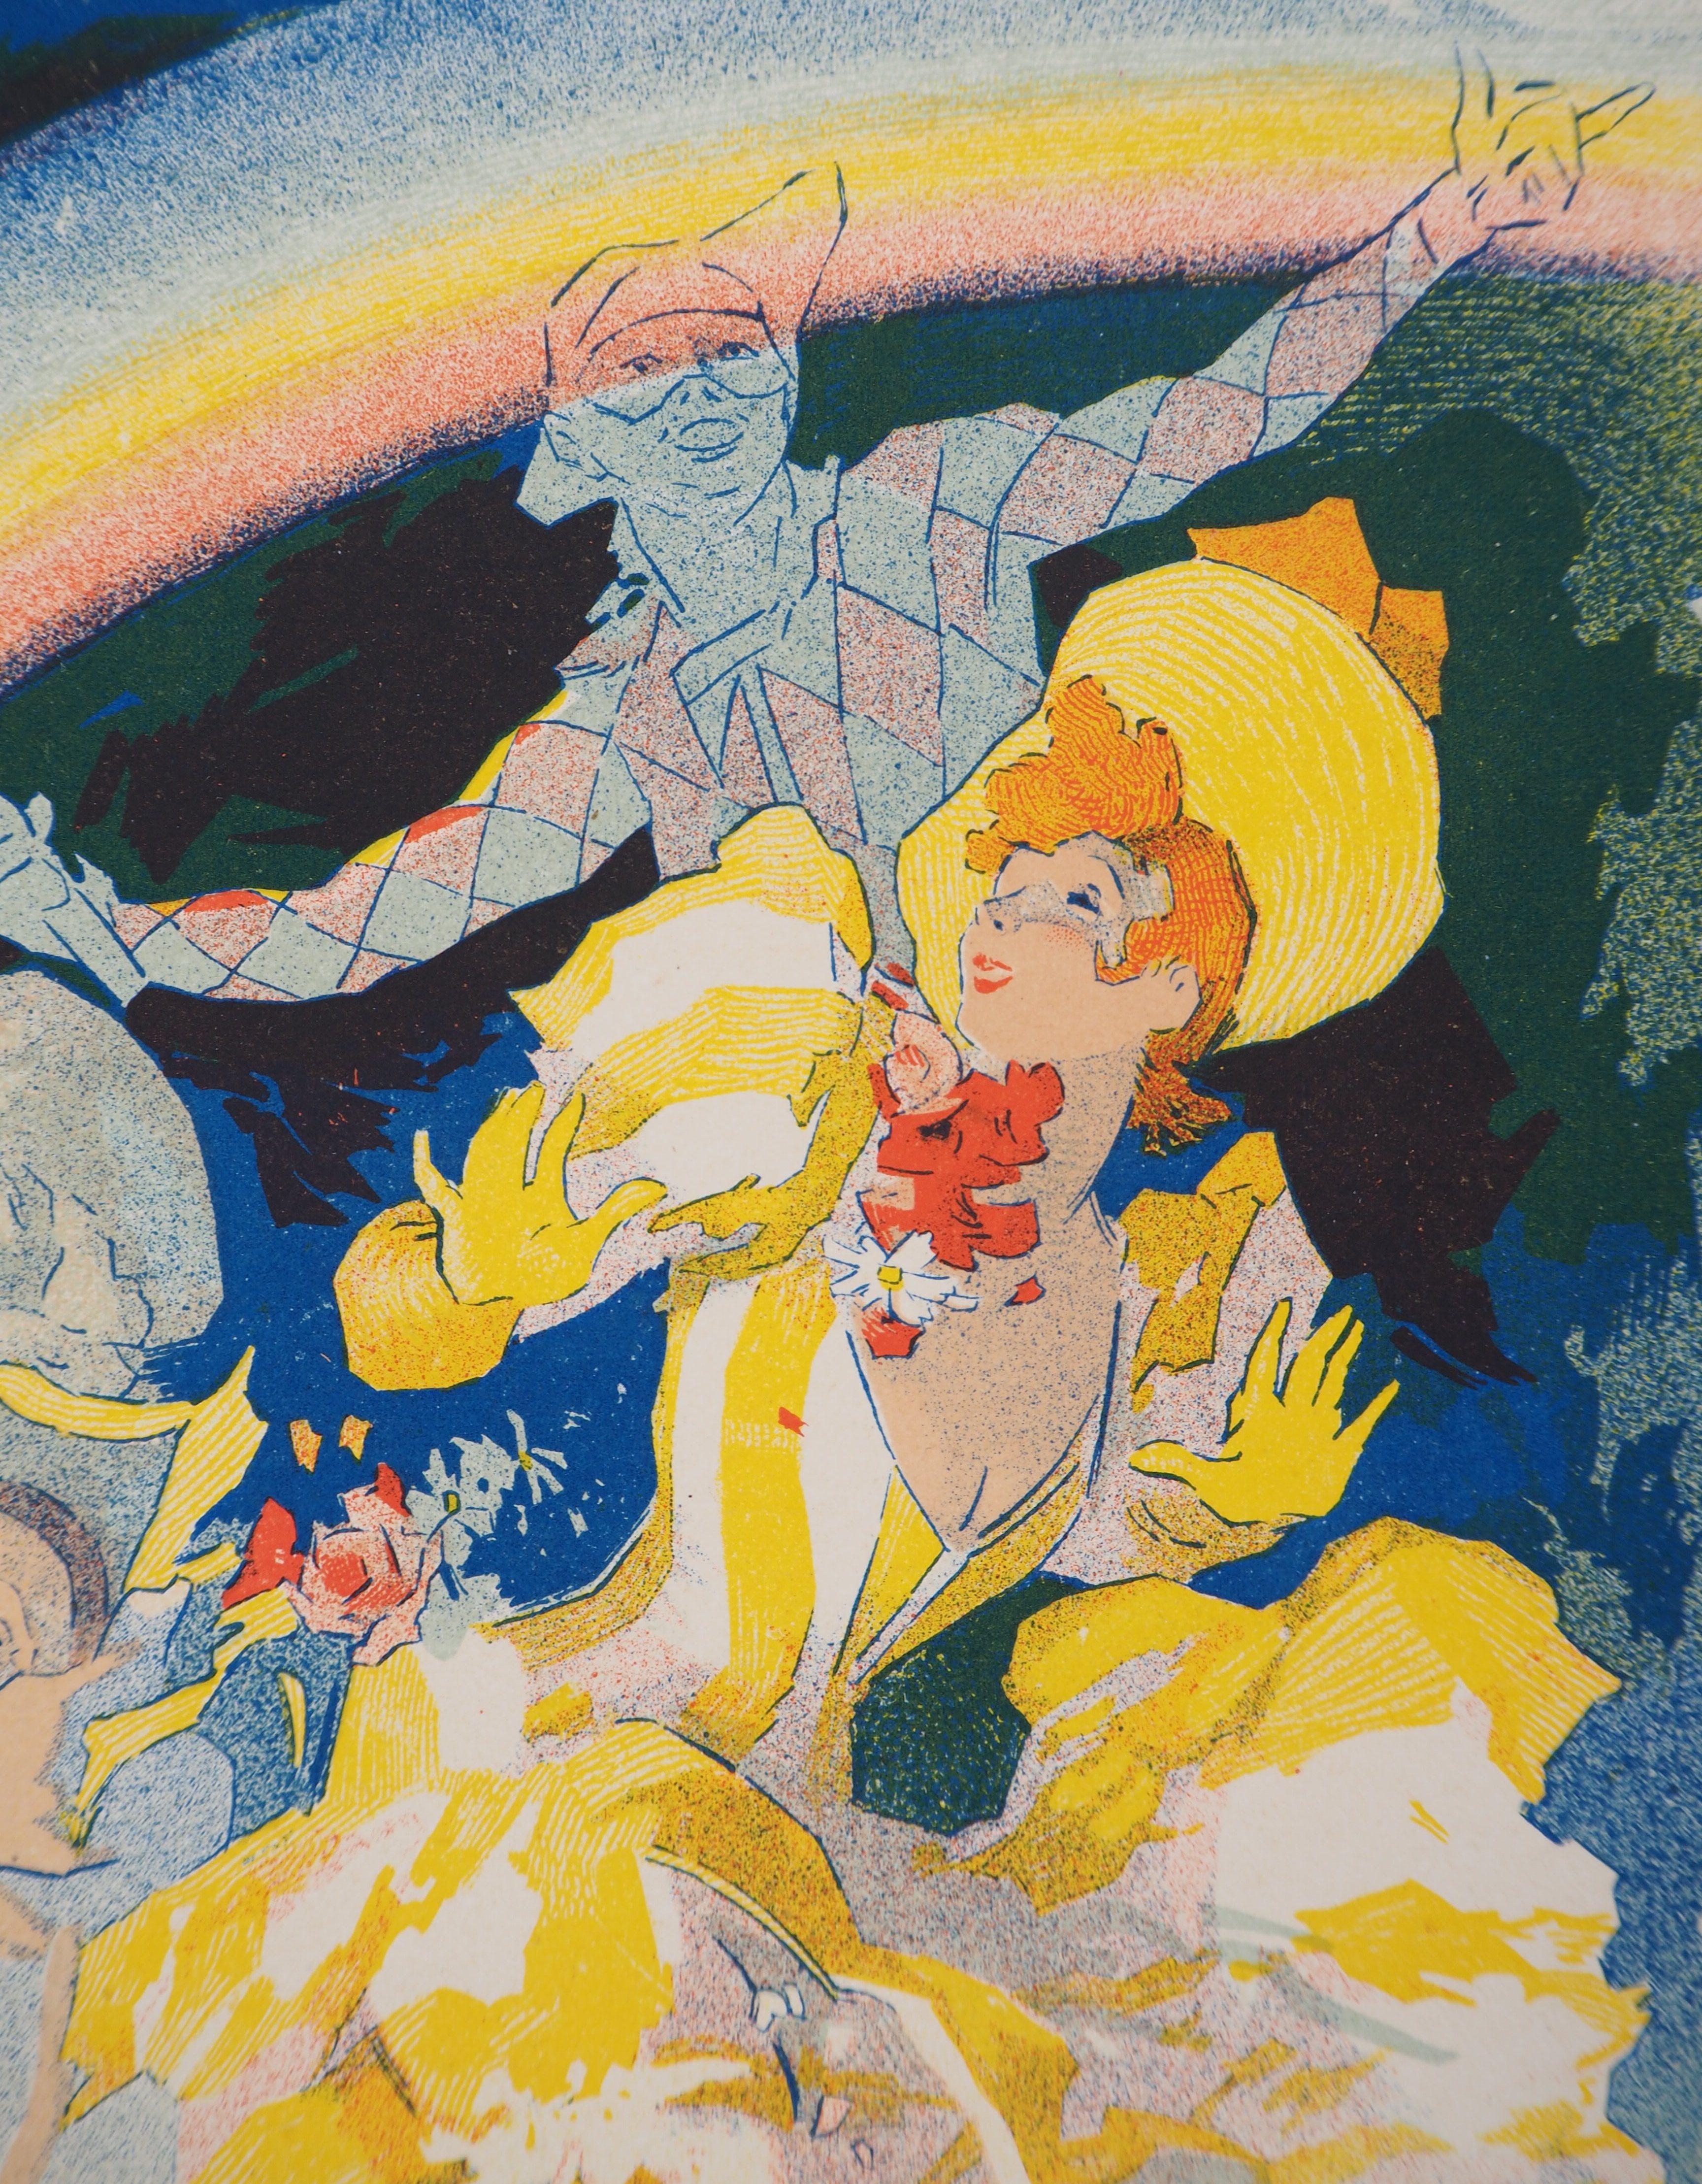 Jules Chéret
Folies-Bergère (L'Arc-en-Ciel), 1895

Stein-Ithographie
Gedruckte Unterschrift auf der Platte
Auf Pergament 
Größe 39 x 29 cm (ca. 15,3 x 11,4